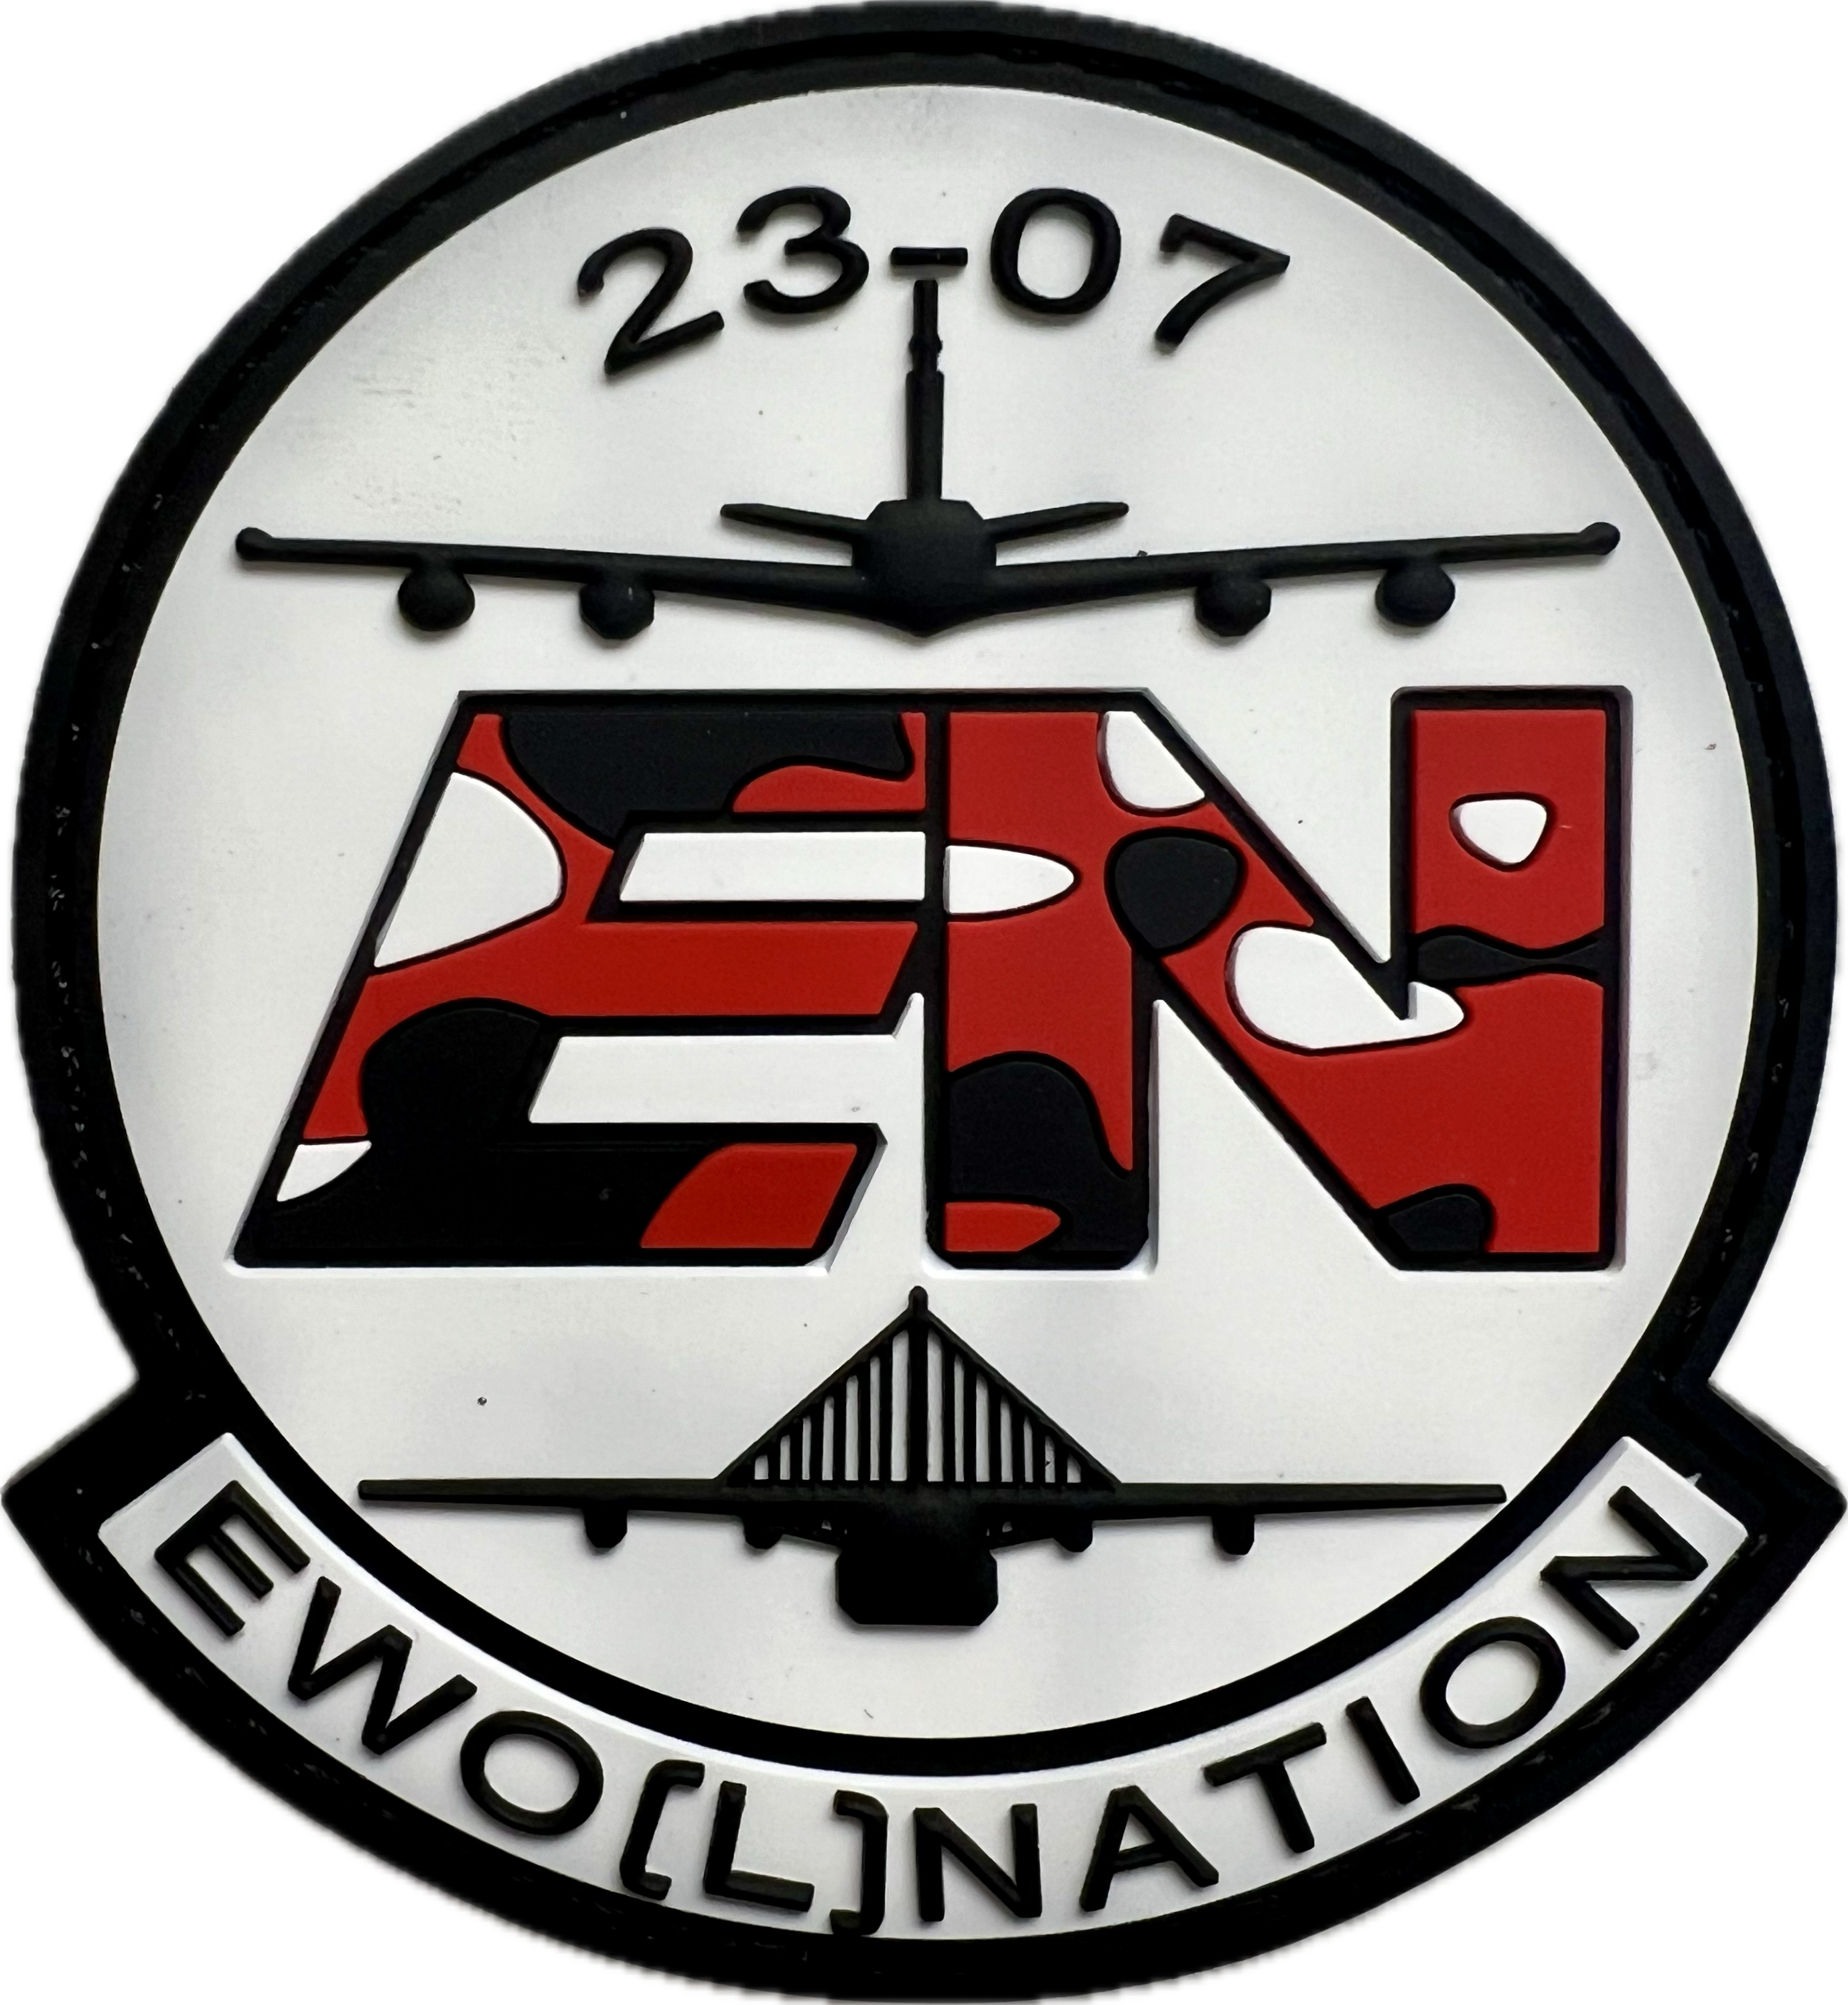 23-07 EWO(L)Nation - PVC